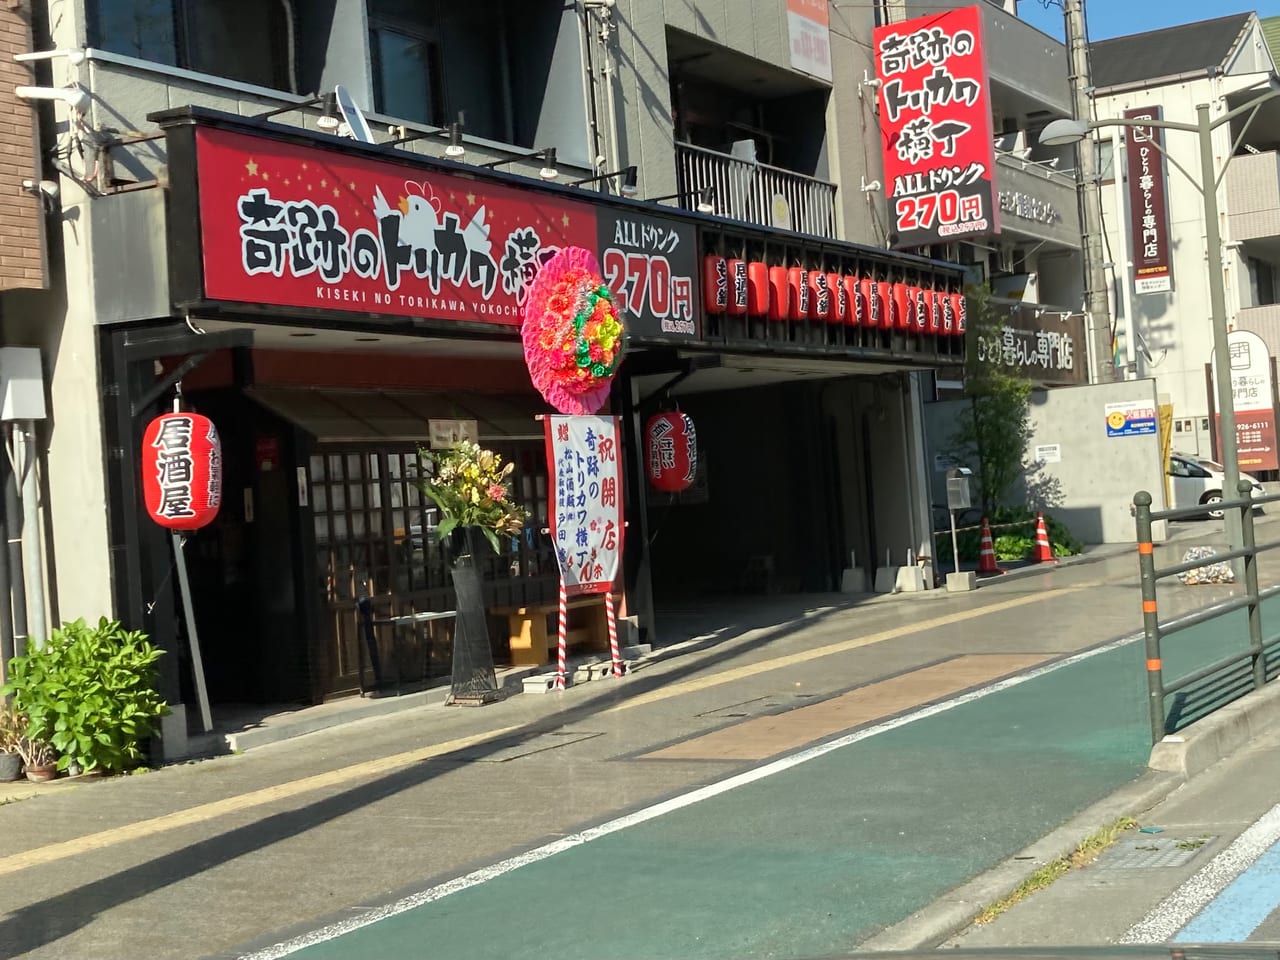 松山市 平和通りに 新しく居酒屋 奇跡のトリカワ横丁 がオープンしていました 号外net 松山市 中予地方